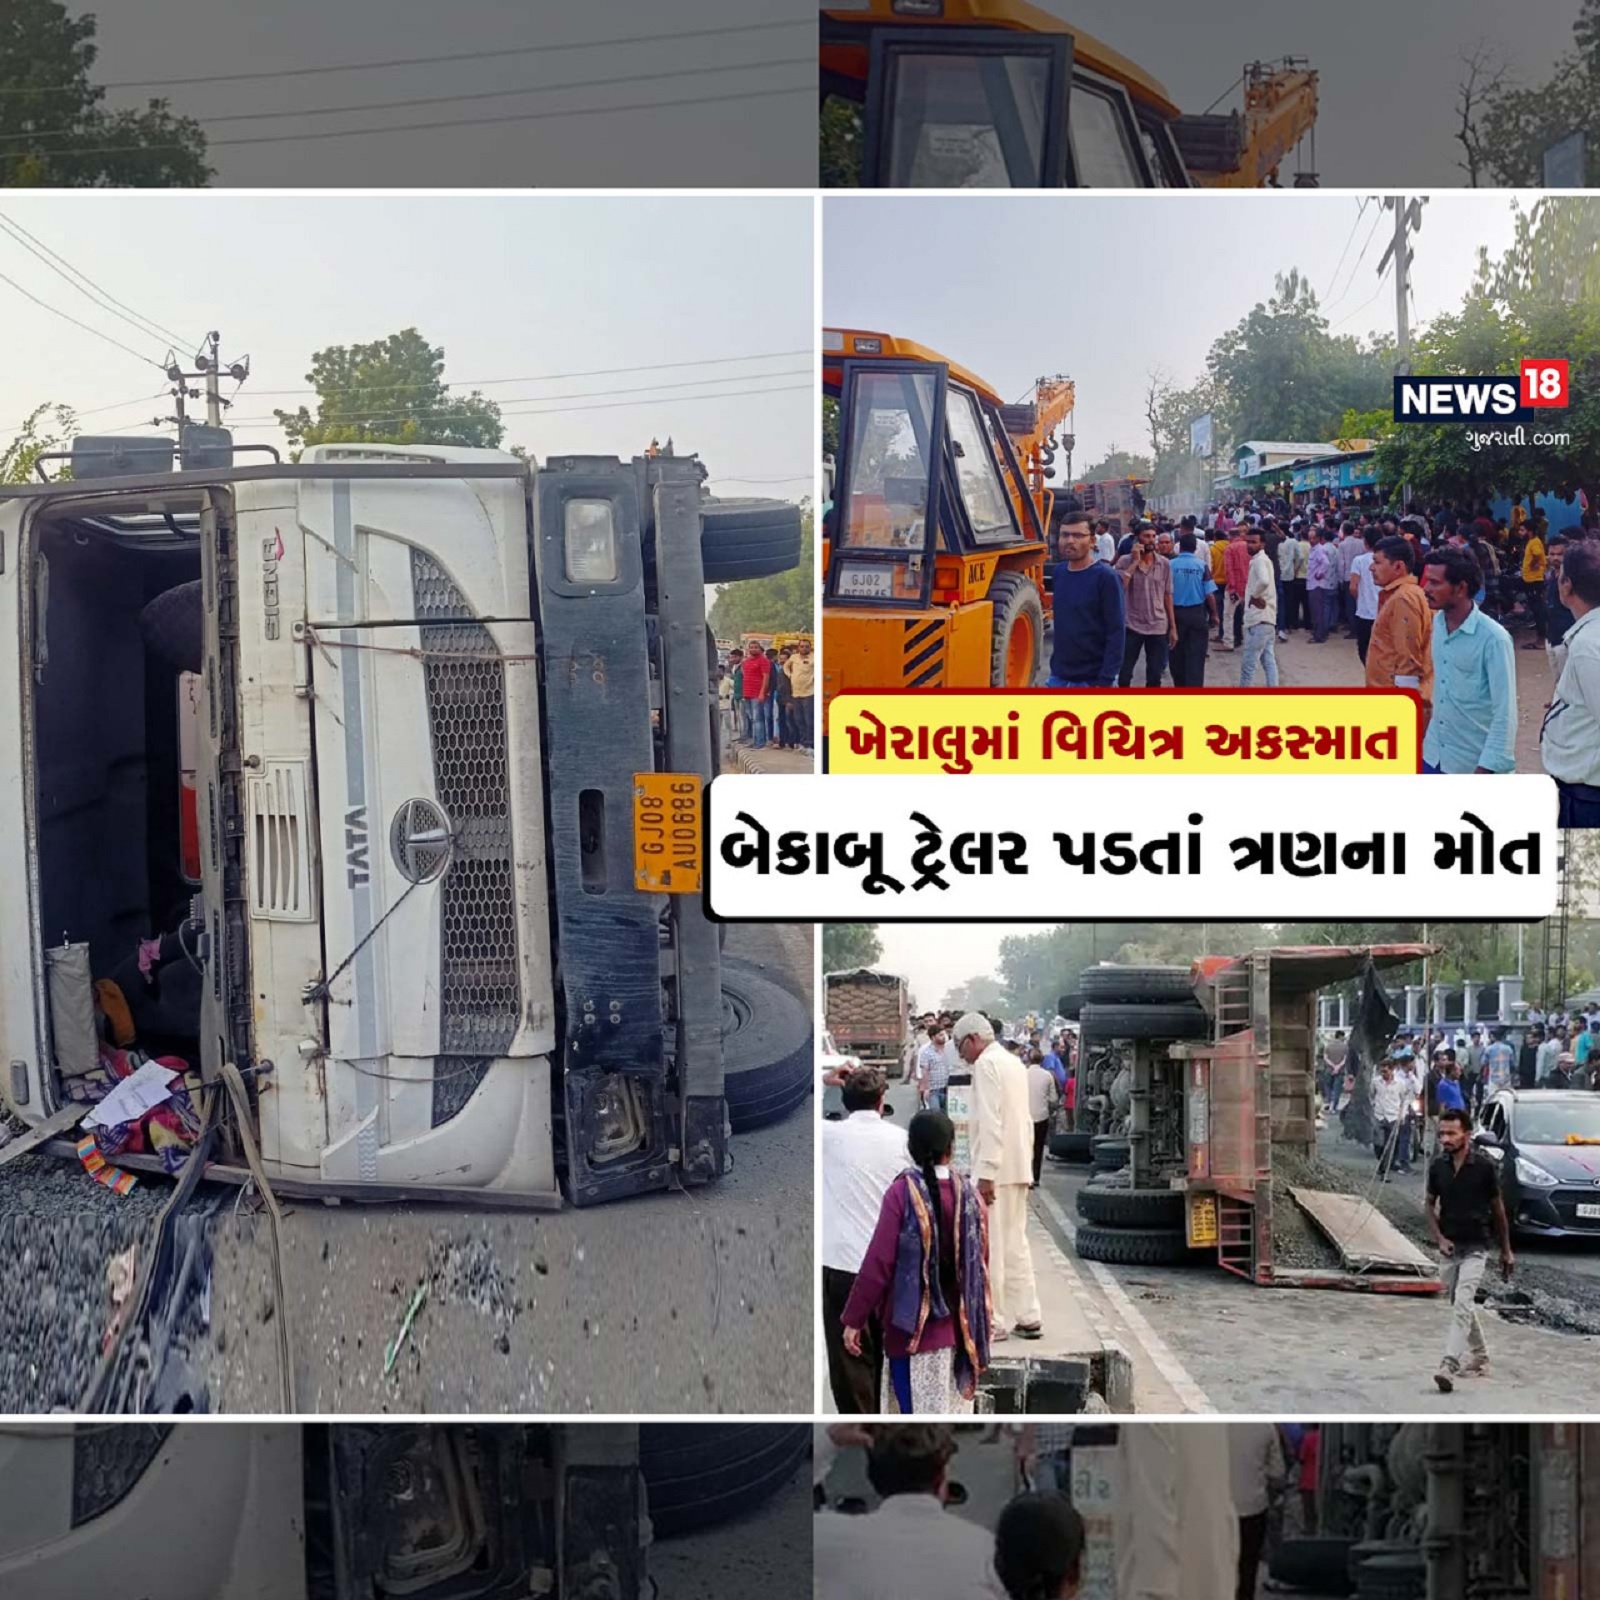  કેતન પટેલ, મહેસાણાઃ ગુજરાતમાં માર્ગ અકસ્માતના (accident in Gujarat) કિસ્સાઓ રોજેરોજ બનતી રહે છે. આવી ઘટનાઓમાં અનેક લોકોએ પોતાનો જીવ ગુમવતા હોય છે. ત્યારે આવી જ એક વિચિત્ર ઘટના મહેસાણા જિલ્લાના (Mehsana accident news) ખેરાલુ શહેર પાસે બની હતી. અહીં એક બેકાબૂ ટ્રેલર ડિવાઈડરને (truck and bike accident) અથડાઈને બાઈક ઉપર પડ્યું હતું. જેના પગલે બે પટેલ પરિવાર સહિત એક અજાણ્યા યુવકનું મોત નીપજ્યું હતું. જ્યારે બે યુવનો ગંભીર રીતે ઈજાઓ પહોંચતા સારવાર અર્થે વડનગર (vadnagar civil hospital) રીફર કરાયા હતા. યુવકે રસ્તામાં જ દમ તોડ્યો હોવાનું જાણવા મળ્યું હતું.